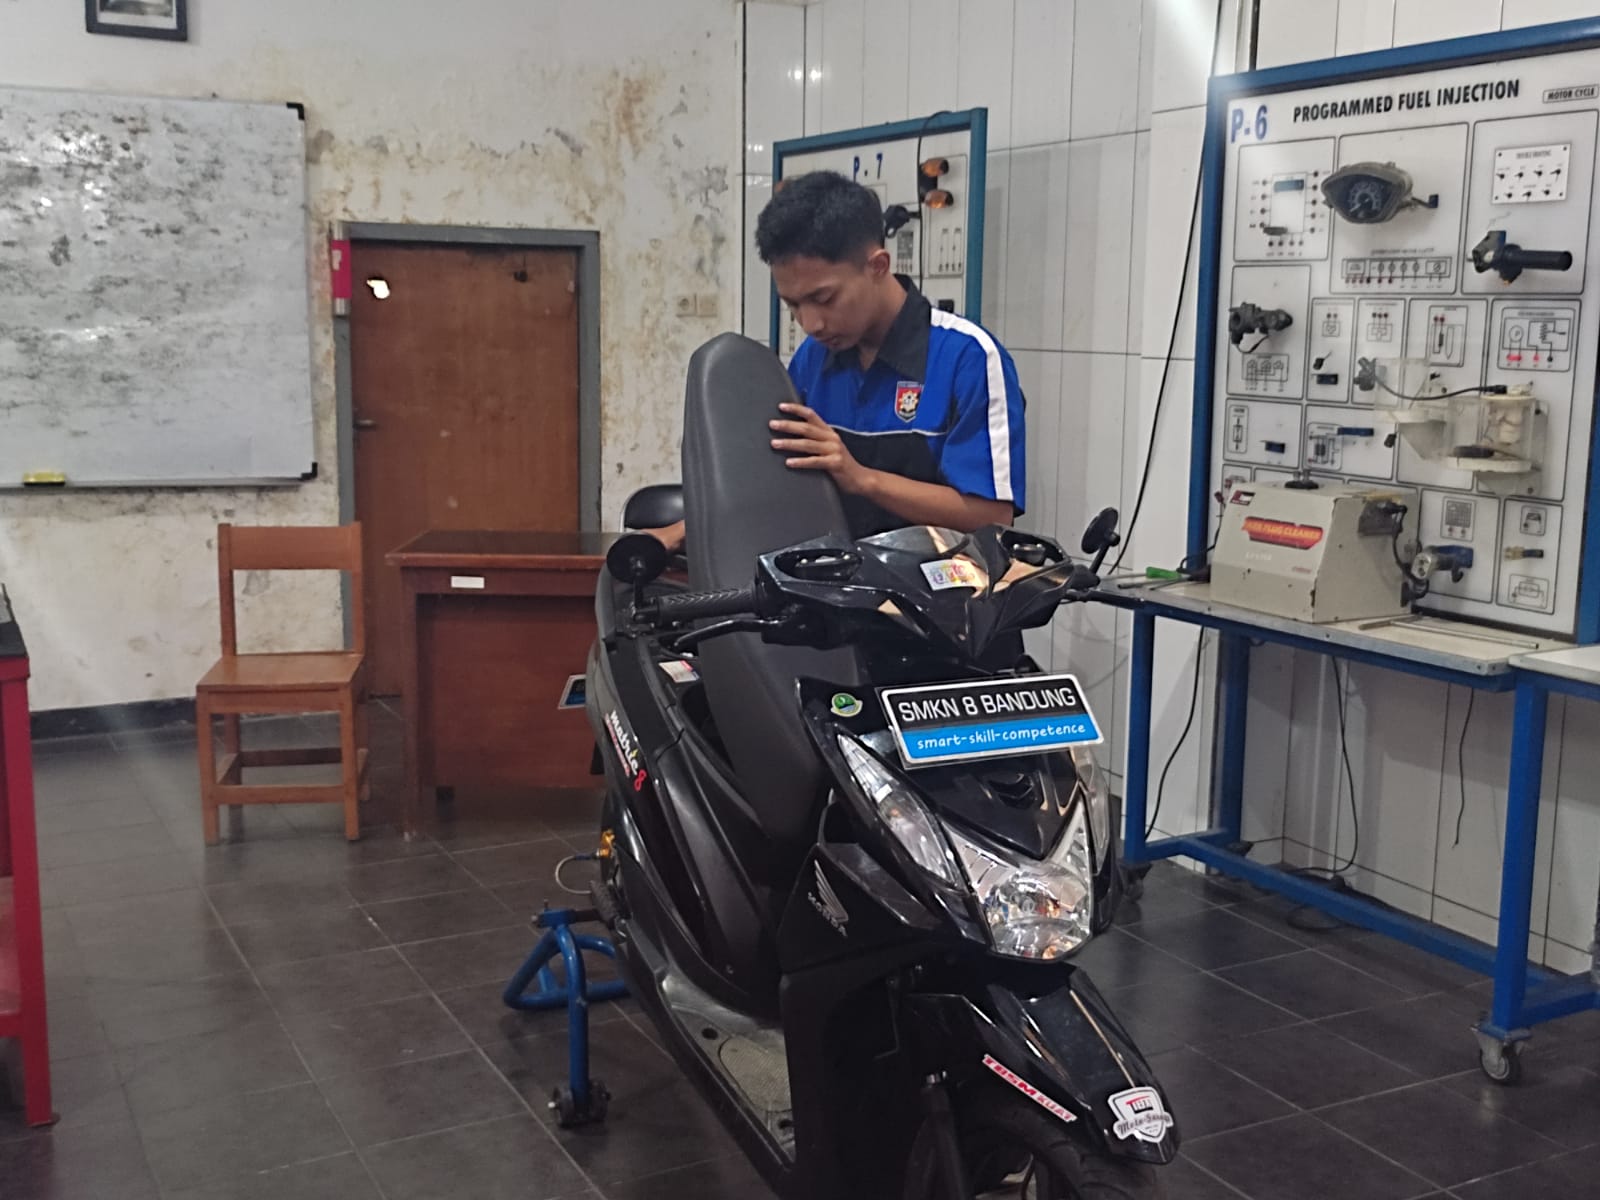 HASIL MODIFIKASI: Arya,16, salah satu siswa yang berpartisipasi dalam pengerjaan motor listrik di SMKN 8 Bandung. (Sadam Husen/Jabar Ekspres)